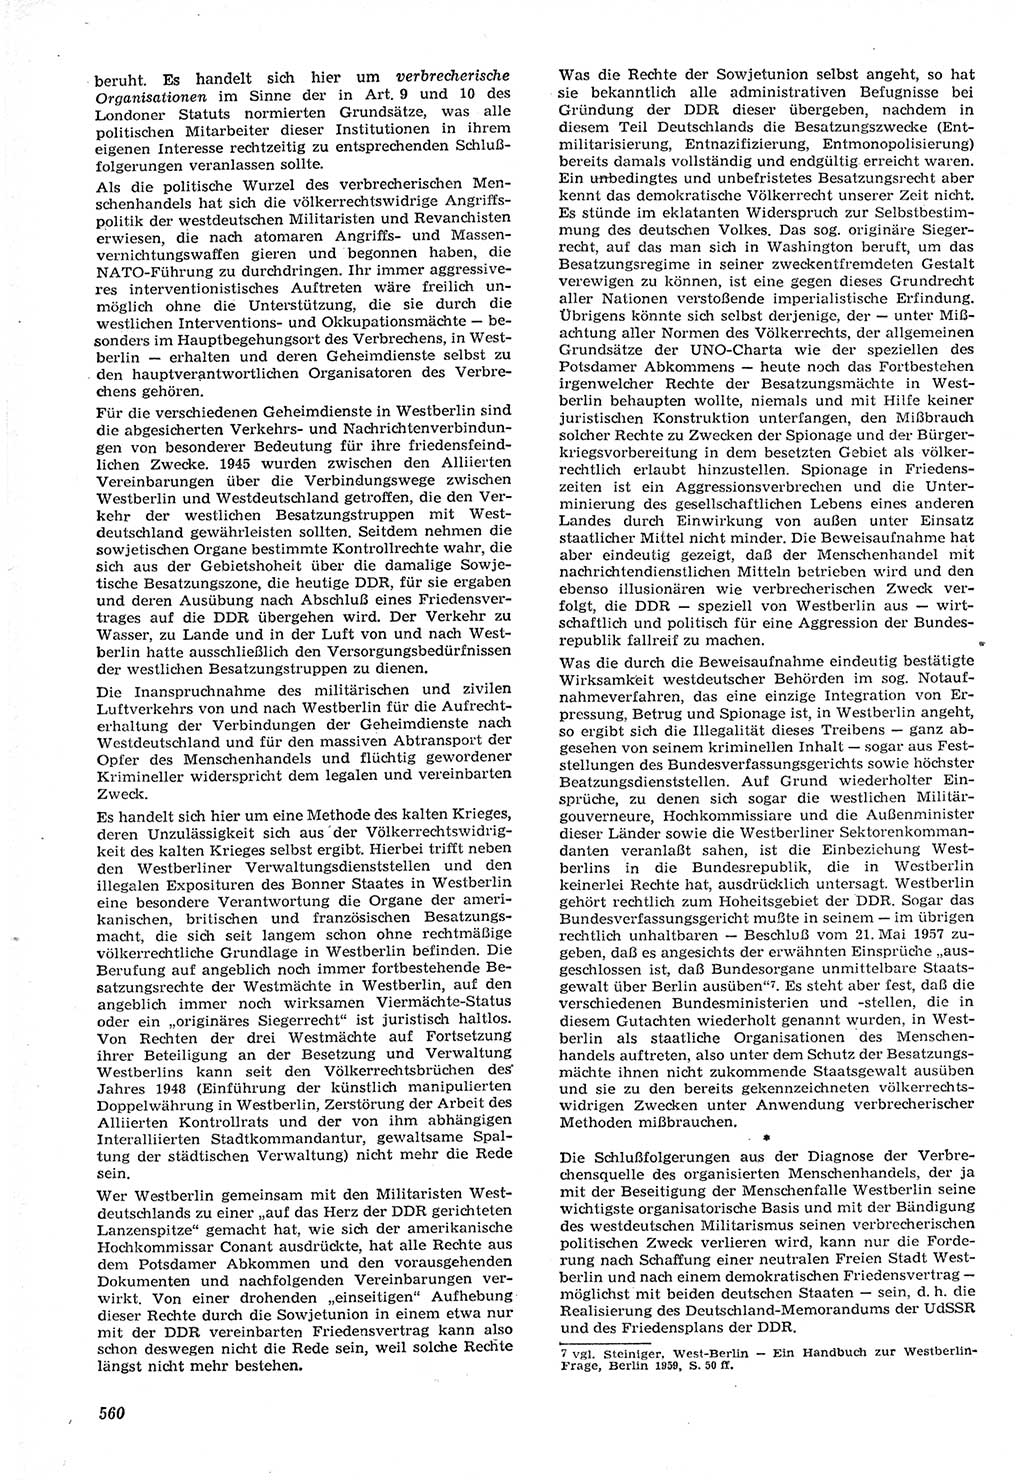 Neue Justiz (NJ), Zeitschrift für Recht und Rechtswissenschaft [Deutsche Demokratische Republik (DDR)], 15. Jahrgang 1961, Seite 560 (NJ DDR 1961, S. 560)